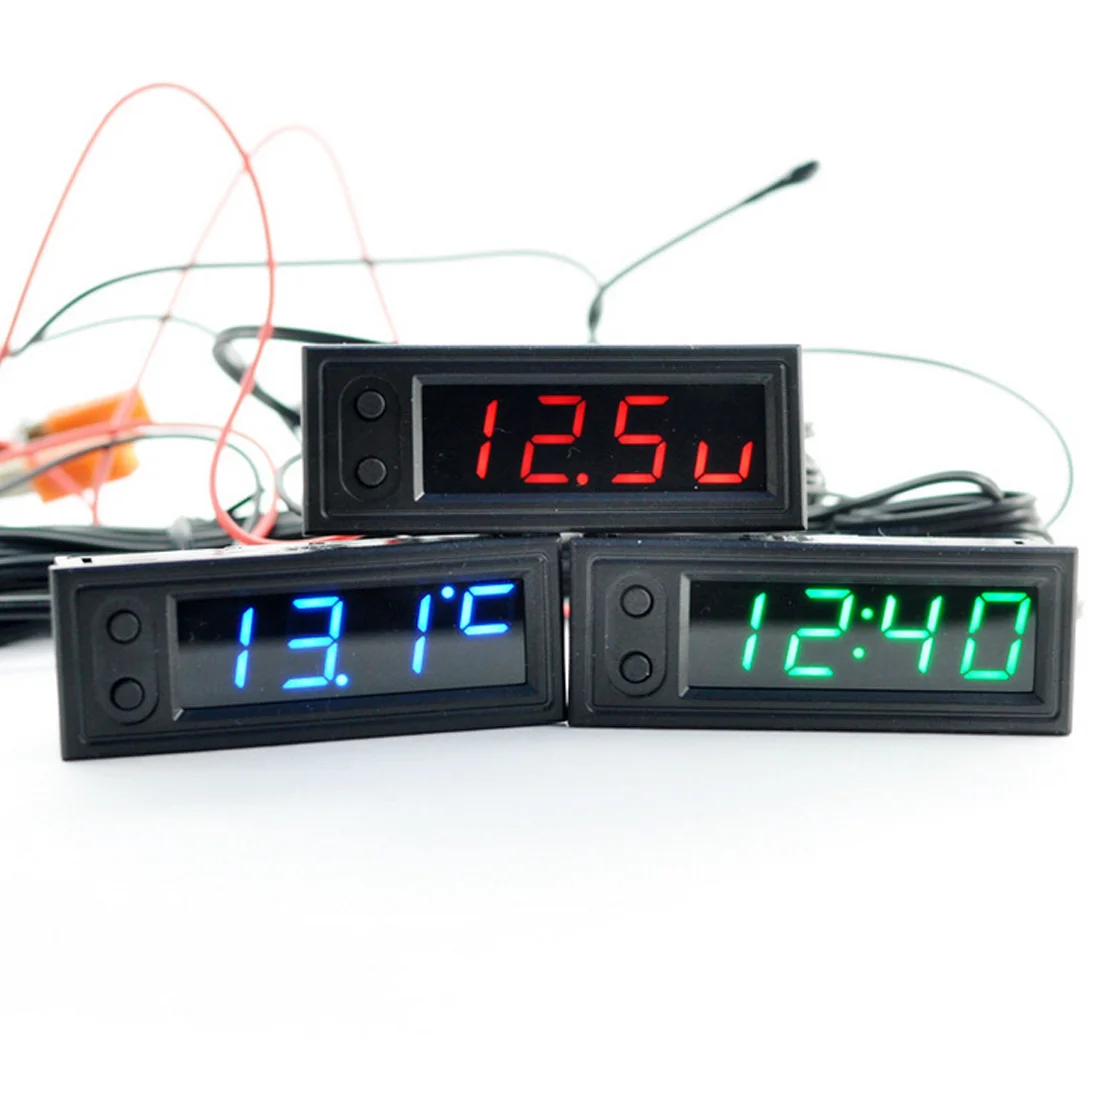 Многофункциональные Высокоточные Часы внутри и снаружи автомобиля температура батареи Напряжение монитор Панель метр DC 12 В красный/зеленый/синий